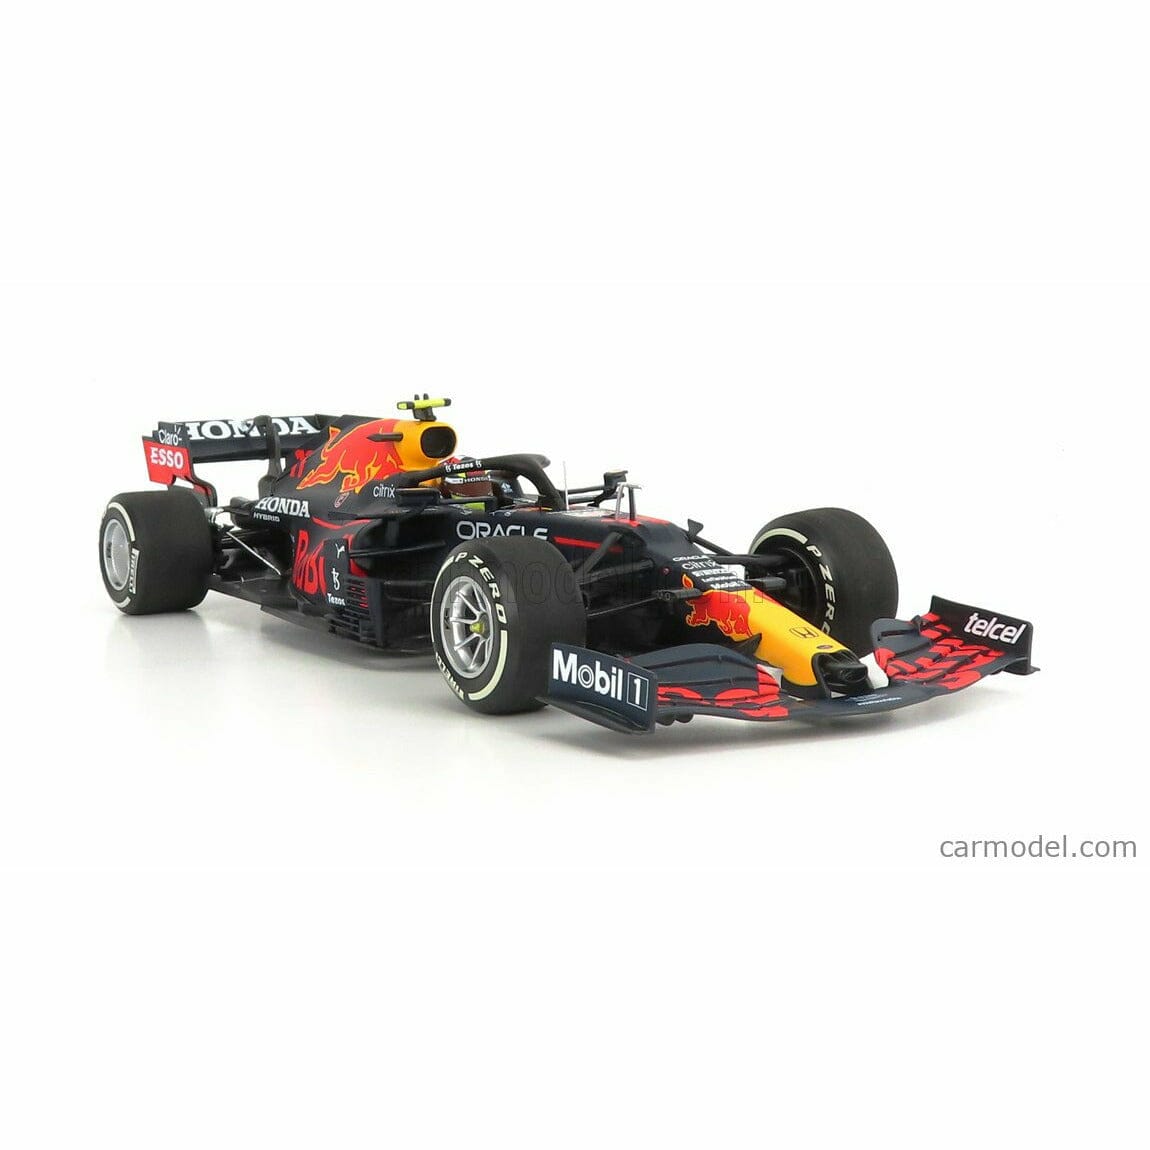 Official F1® Models, Formula 1® Scale Models